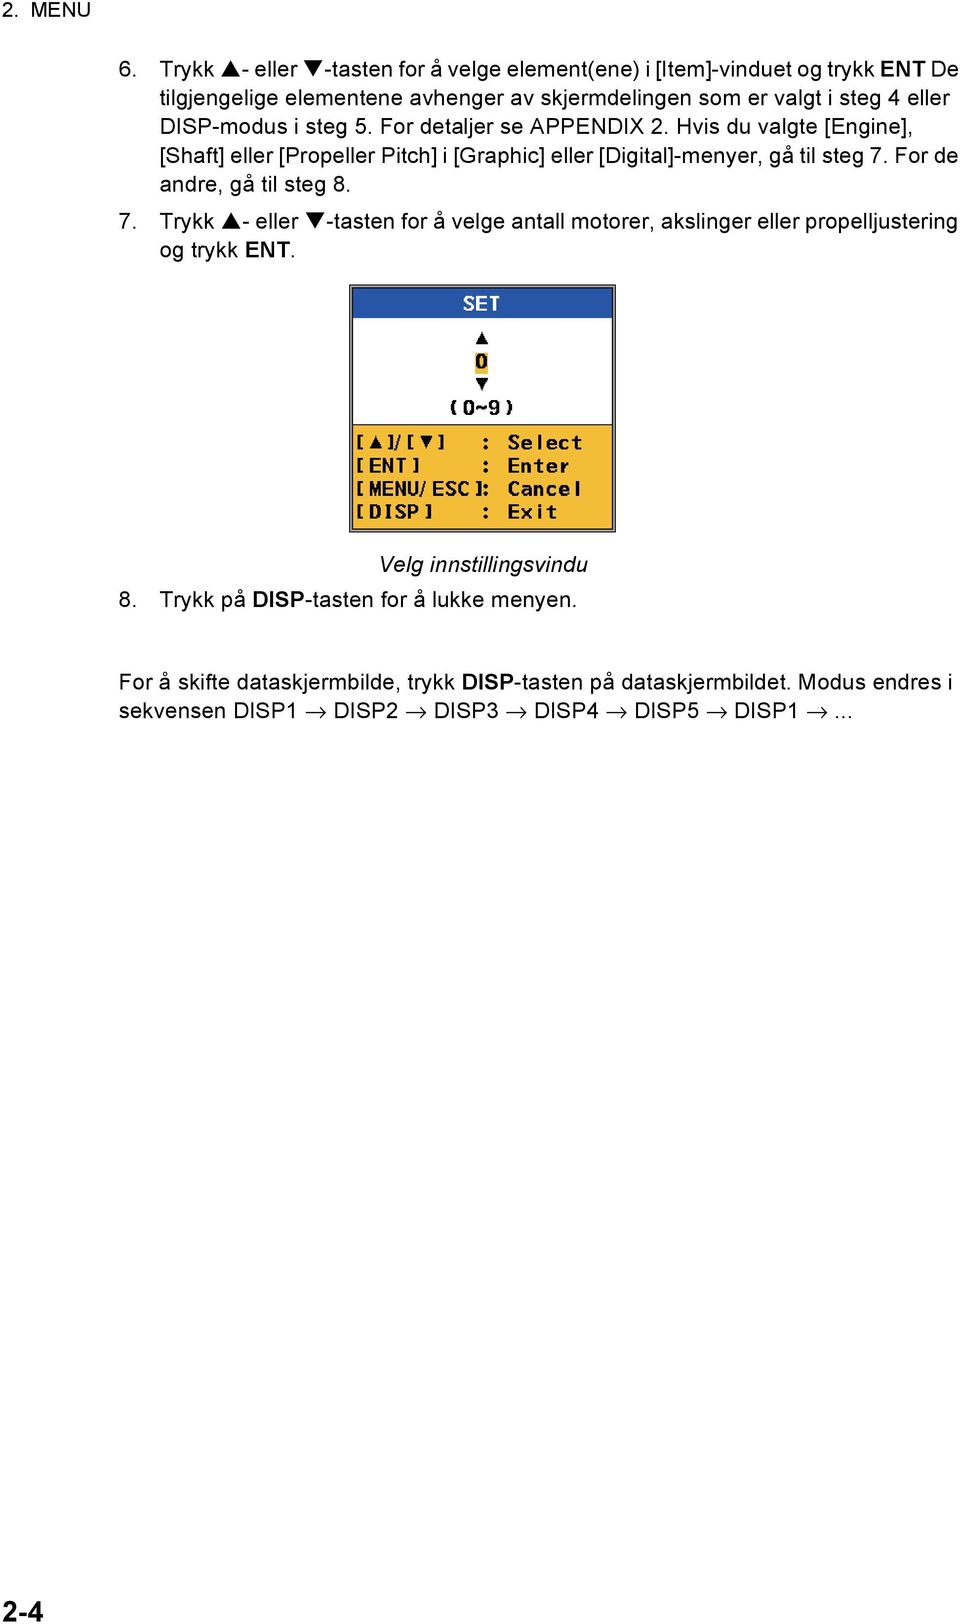 DISP-modus i steg 5. For detaljer se APPENDIX 2. Hvis du valgte [Engine], [Shaft] eller [Propeller Pitch] i [Graphic] eller [Digital]-menyer, gå til steg 7.